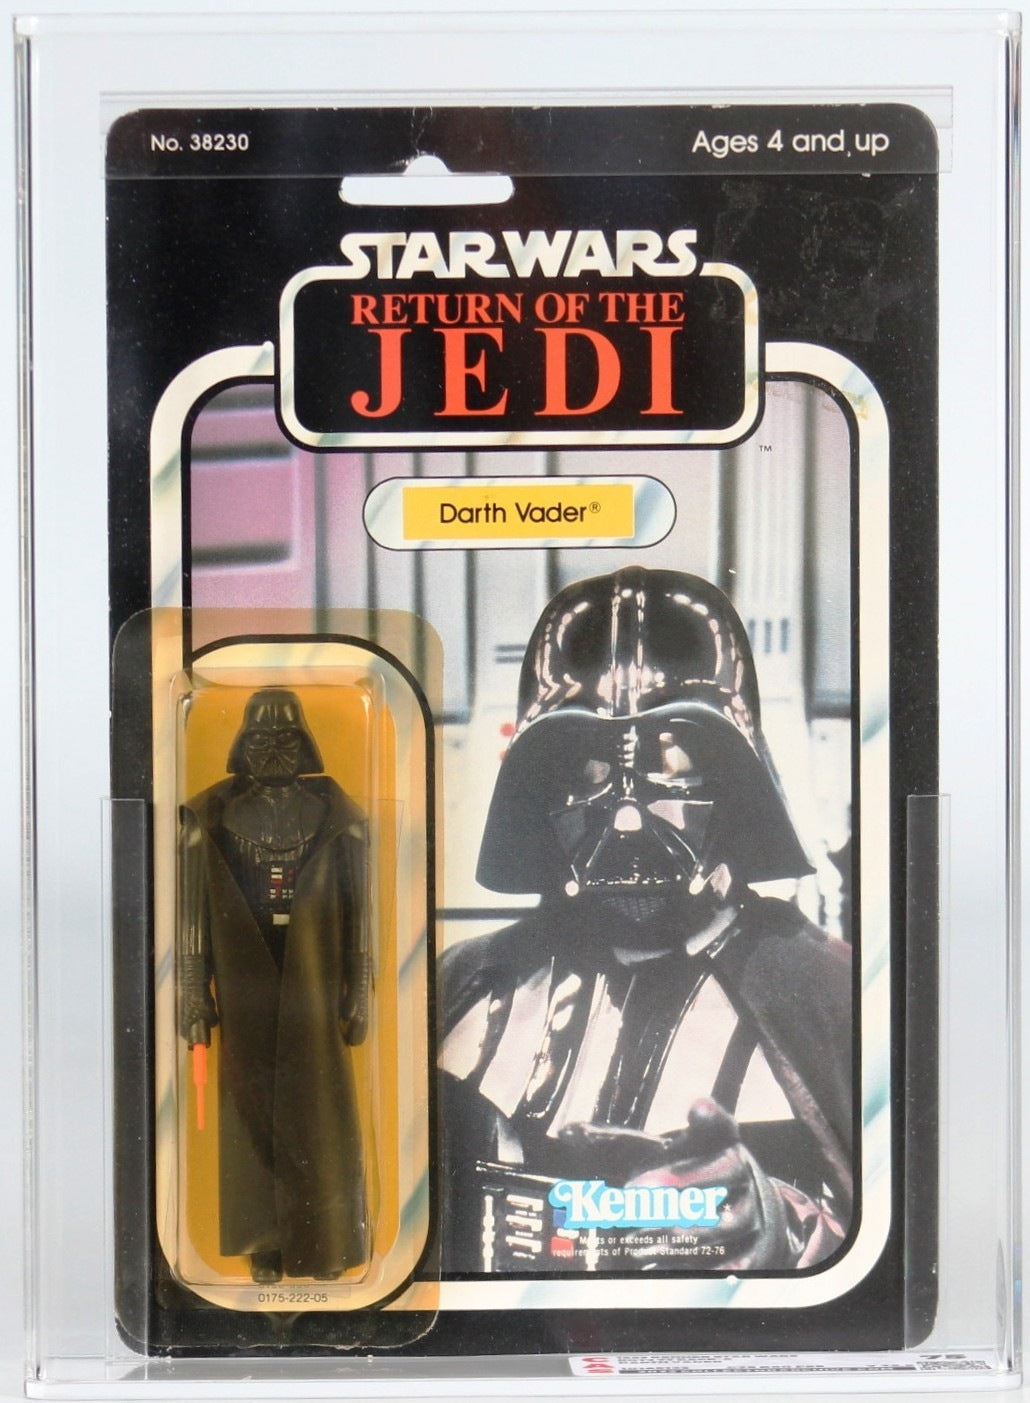 Star Wars 77 Back Carded Action Figure - Darth Vader CAS 75